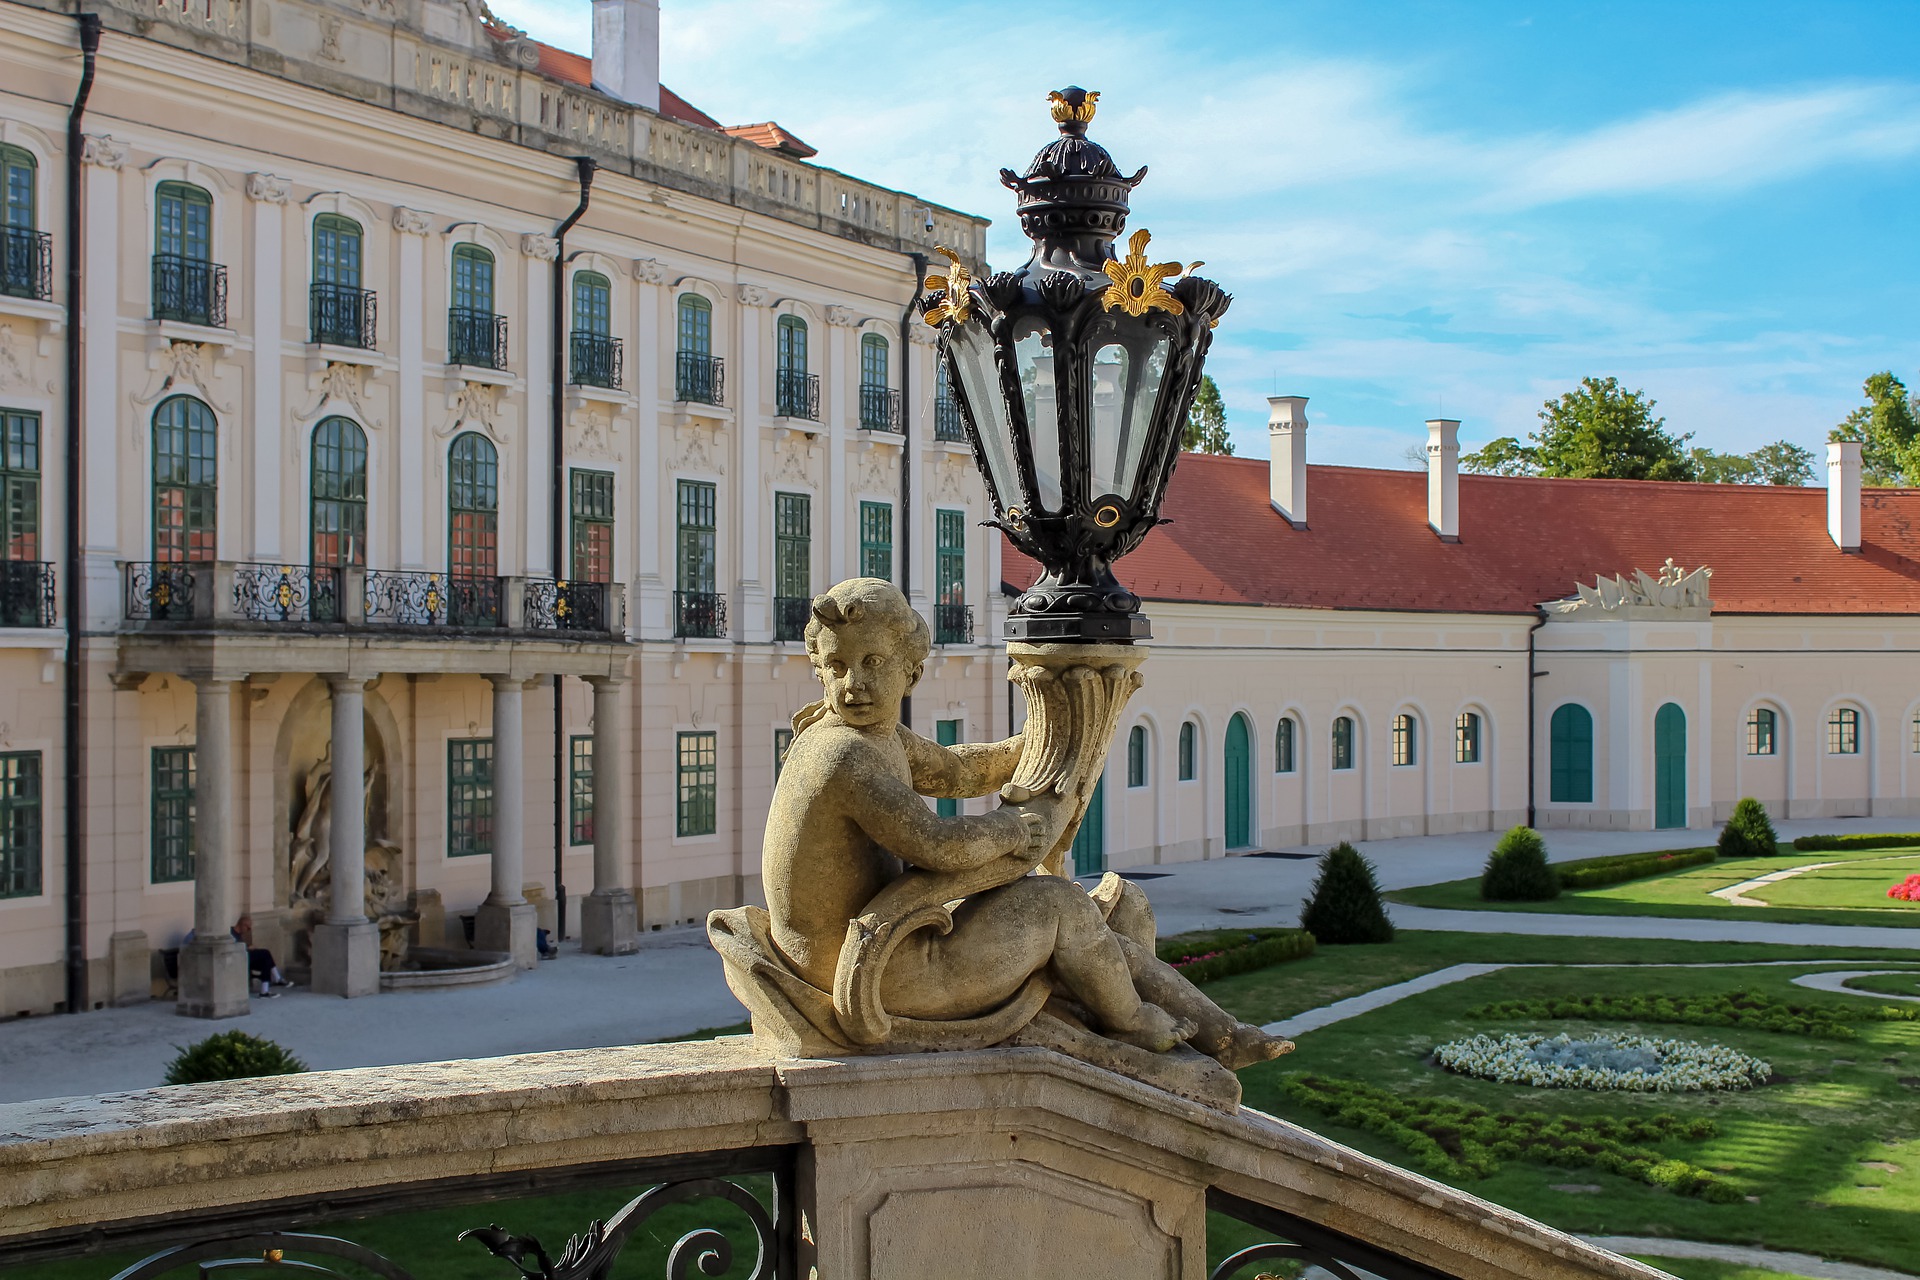 Renovierung des Schlosses Esterházy in Fertőd wird fortgesetzt